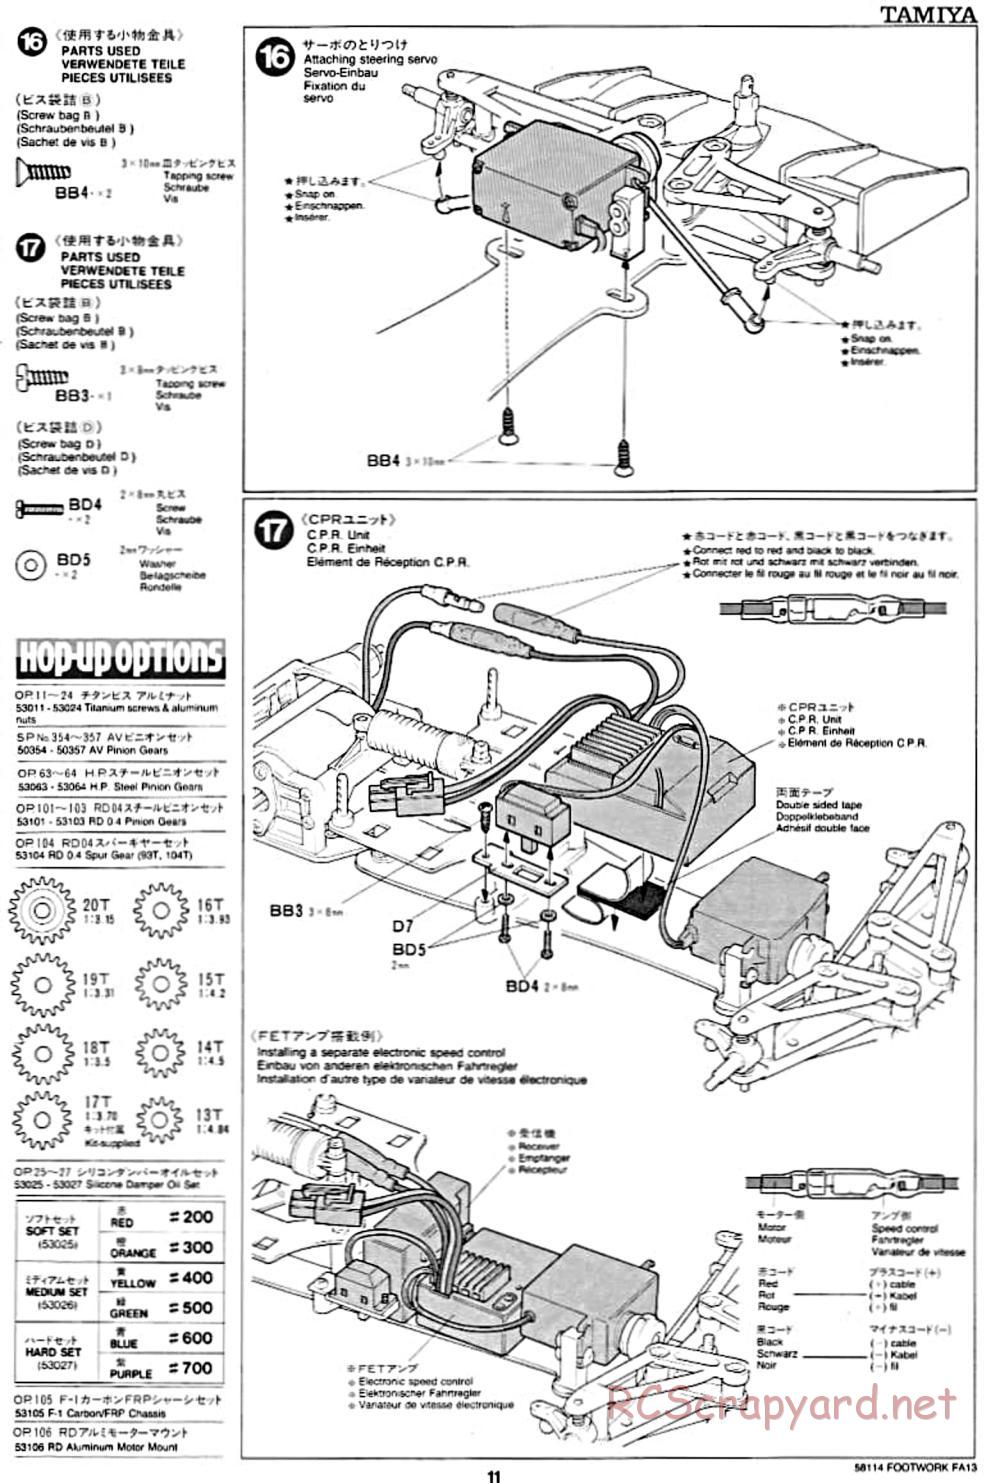 Tamiya - Footwork FA13 Mugen Honda - F102 Chassis - Manual - Page 11